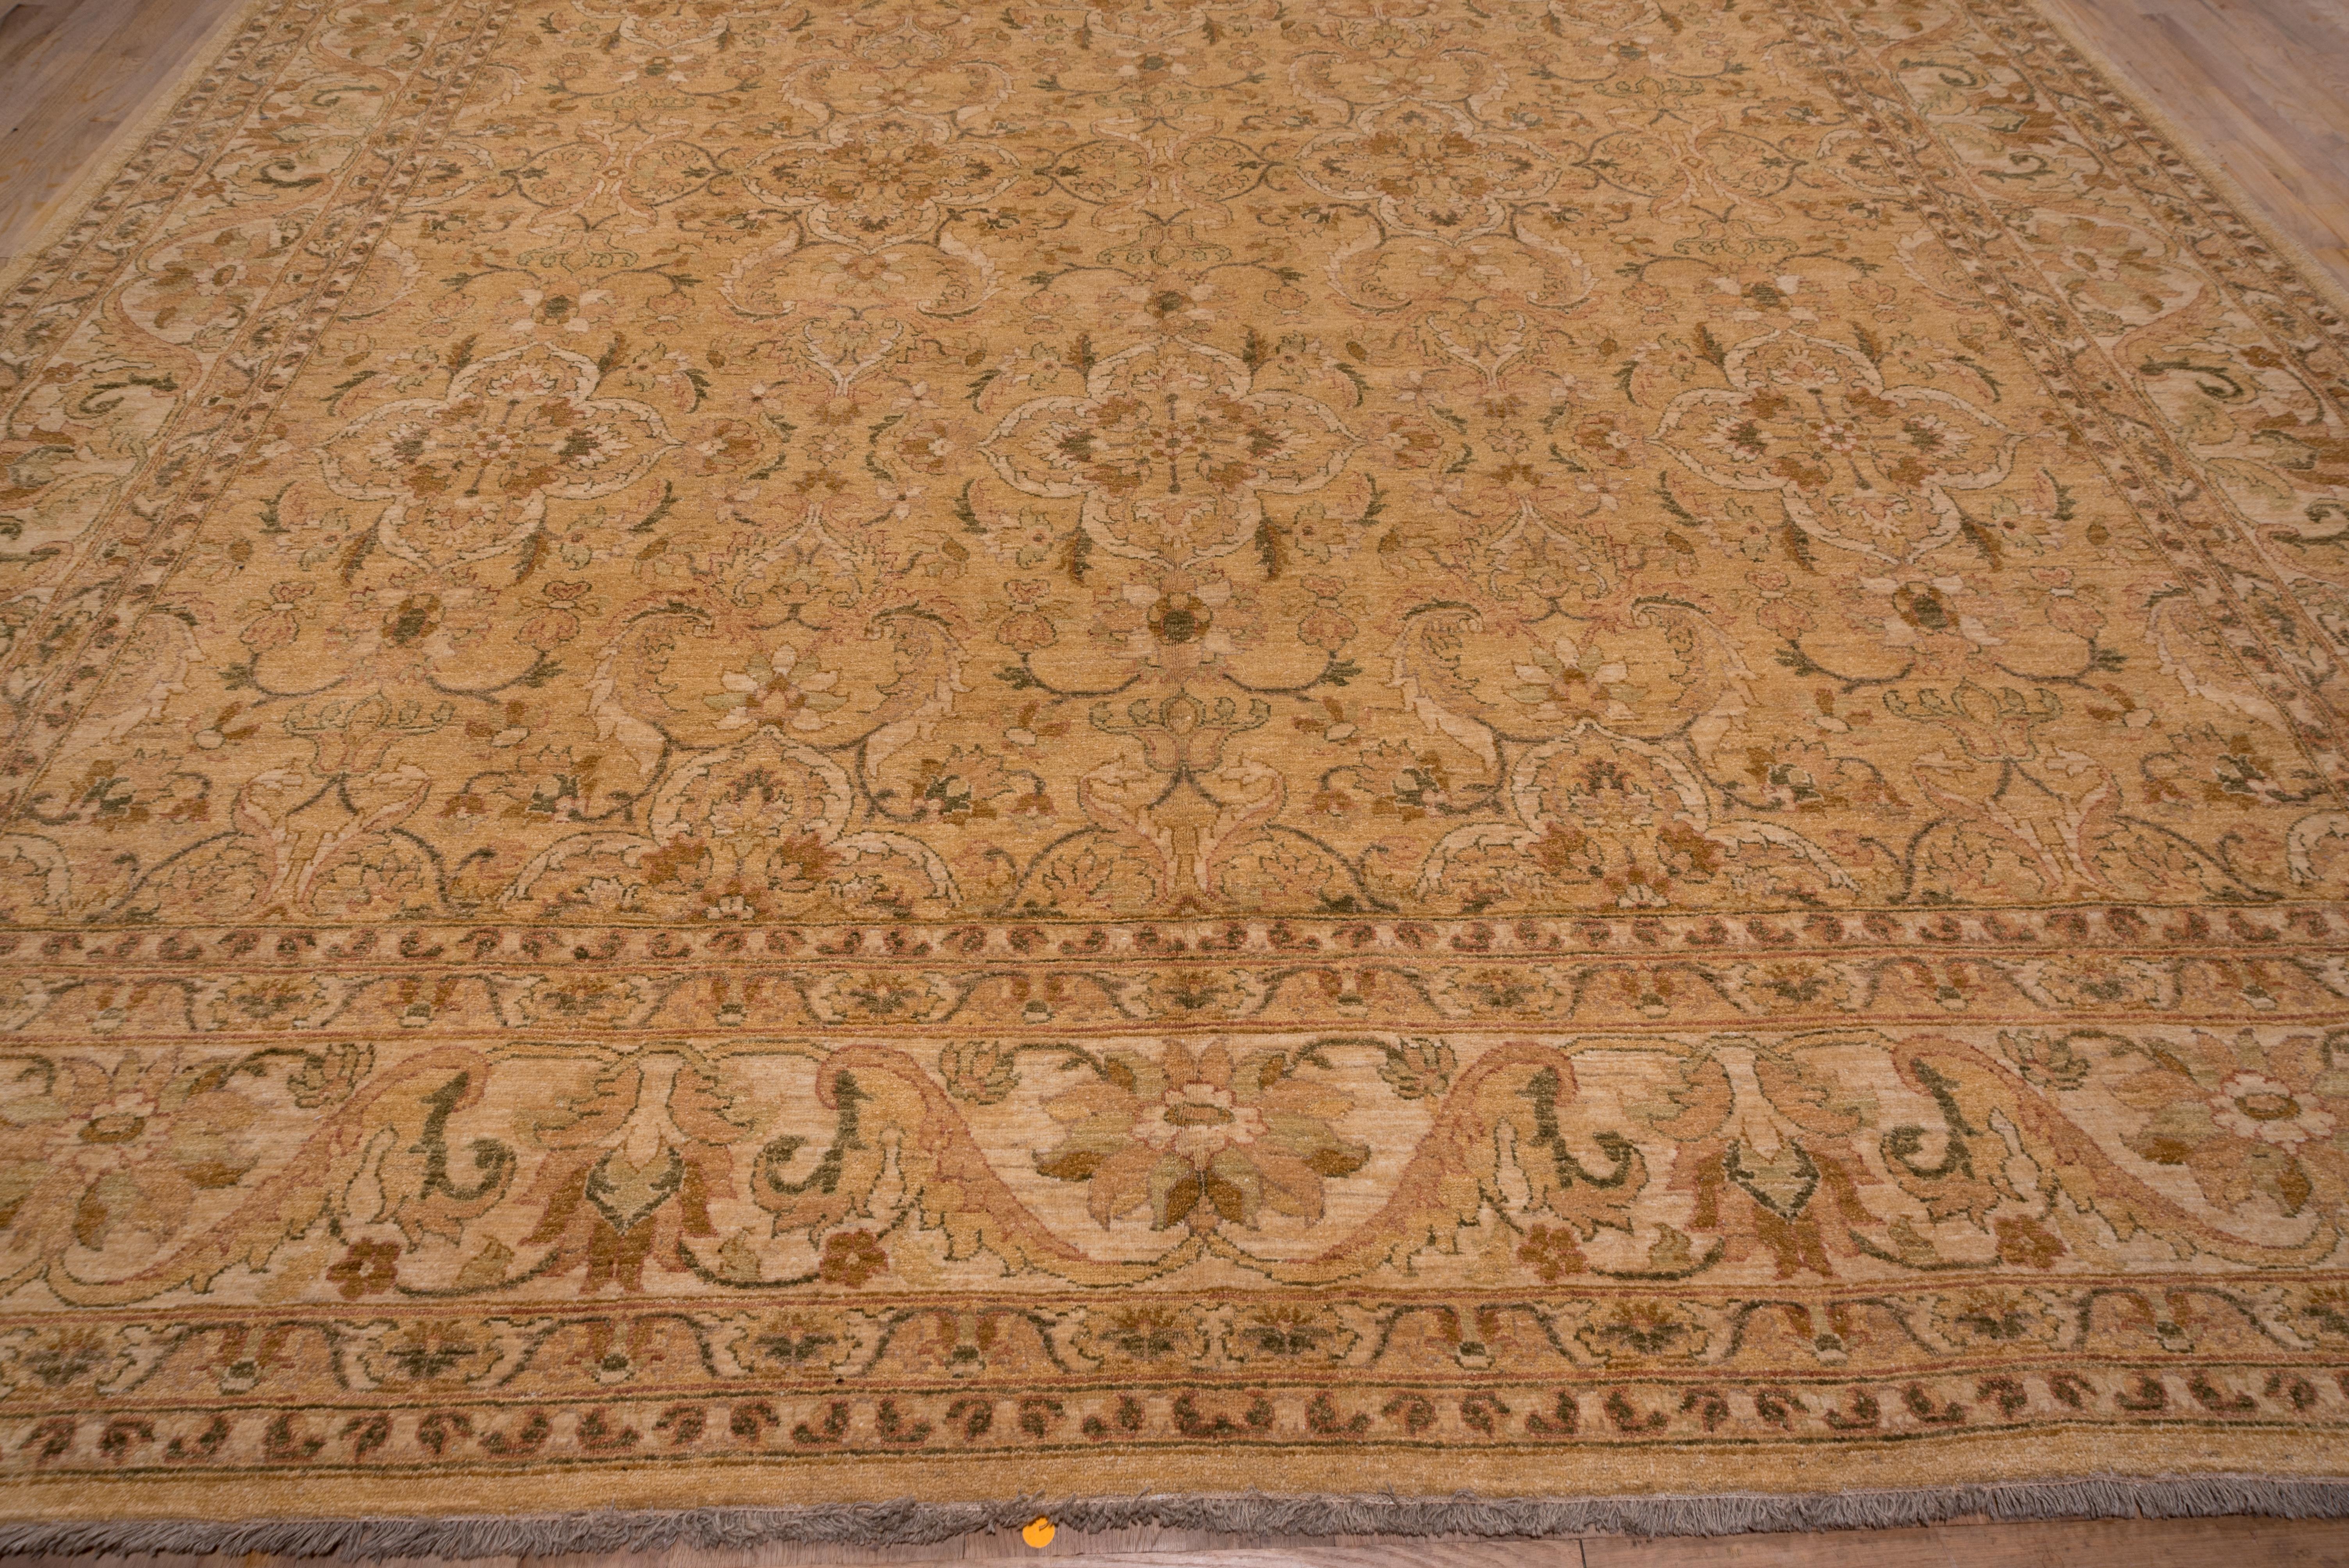 Das Sandfeld zeigt ein All-Over-Muster aus kreuzförmig angeordneten, gegabelten Arabesken mit Details in Hell- und Mittelbraun, eingerahmt von einer cremefarbenen Bordüre aus gespaltenen Blattbögen, die Palmetten einschließen. Die allgemeine